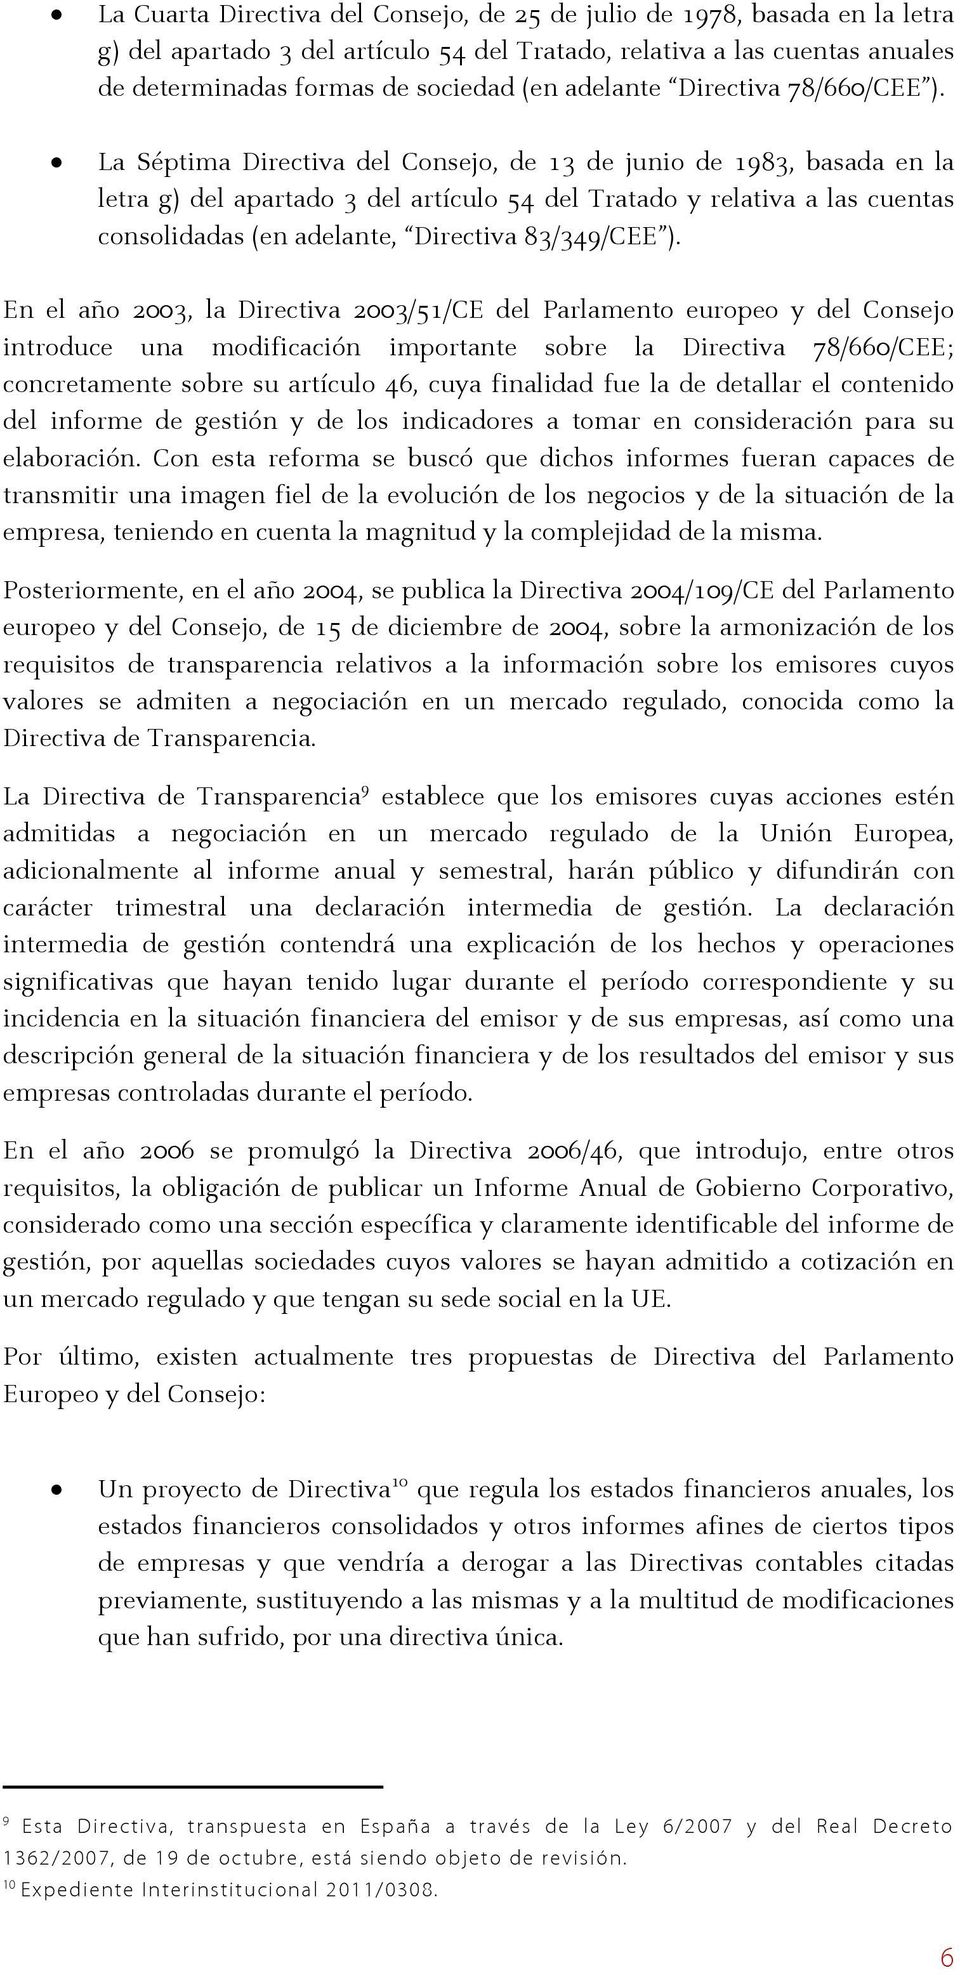 La Séptima Directiva del Consejo, de 13 de junio de 1983, basada en la letra g) del apartado 3 del artículo 54 del Tratado y relativa a las cuentas consolidadas (en adelante, Directiva 83/349/CEE ).